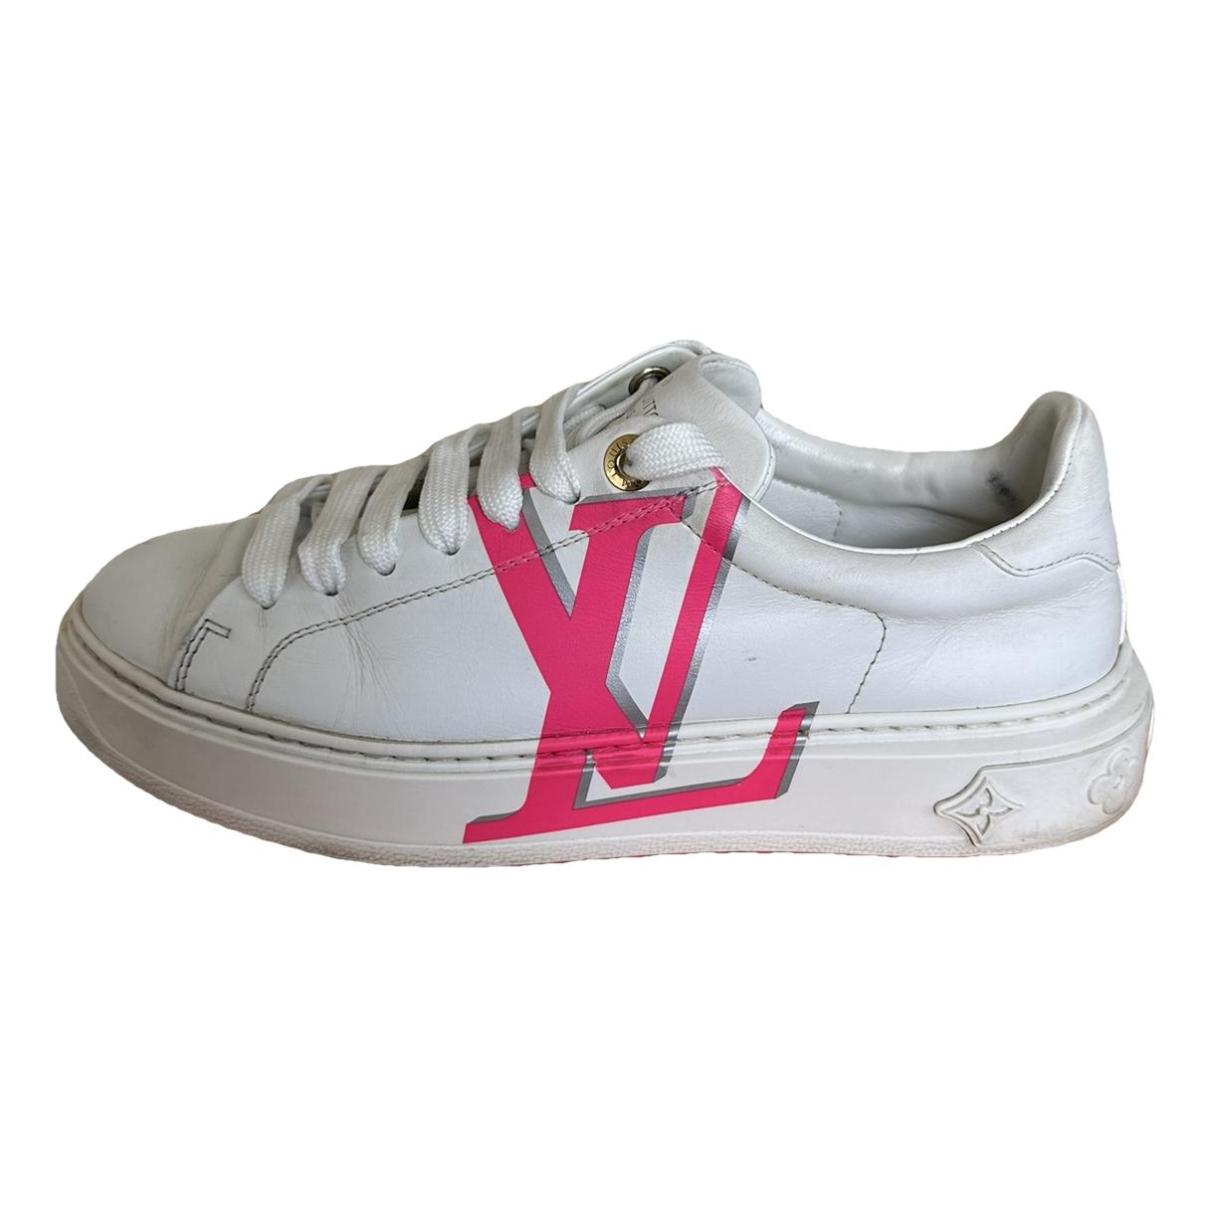 Louis Vuitton Time Out Sneaker Damen Schuhe weiß leder